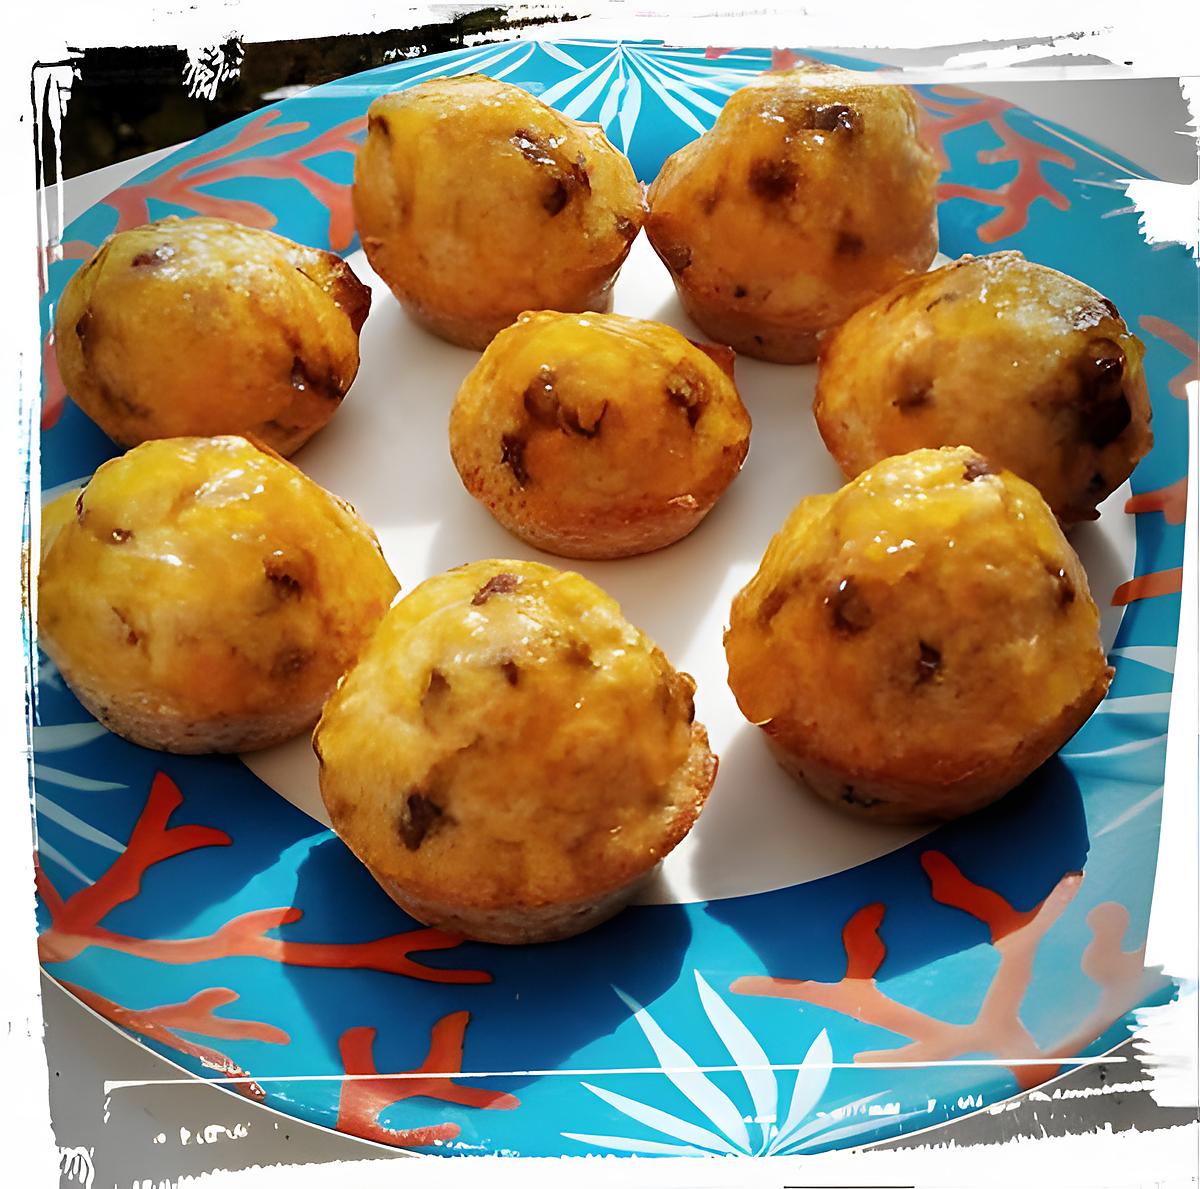 recette mini-muffins aux muesli et pépite chocolat nappés confiture d'abricot